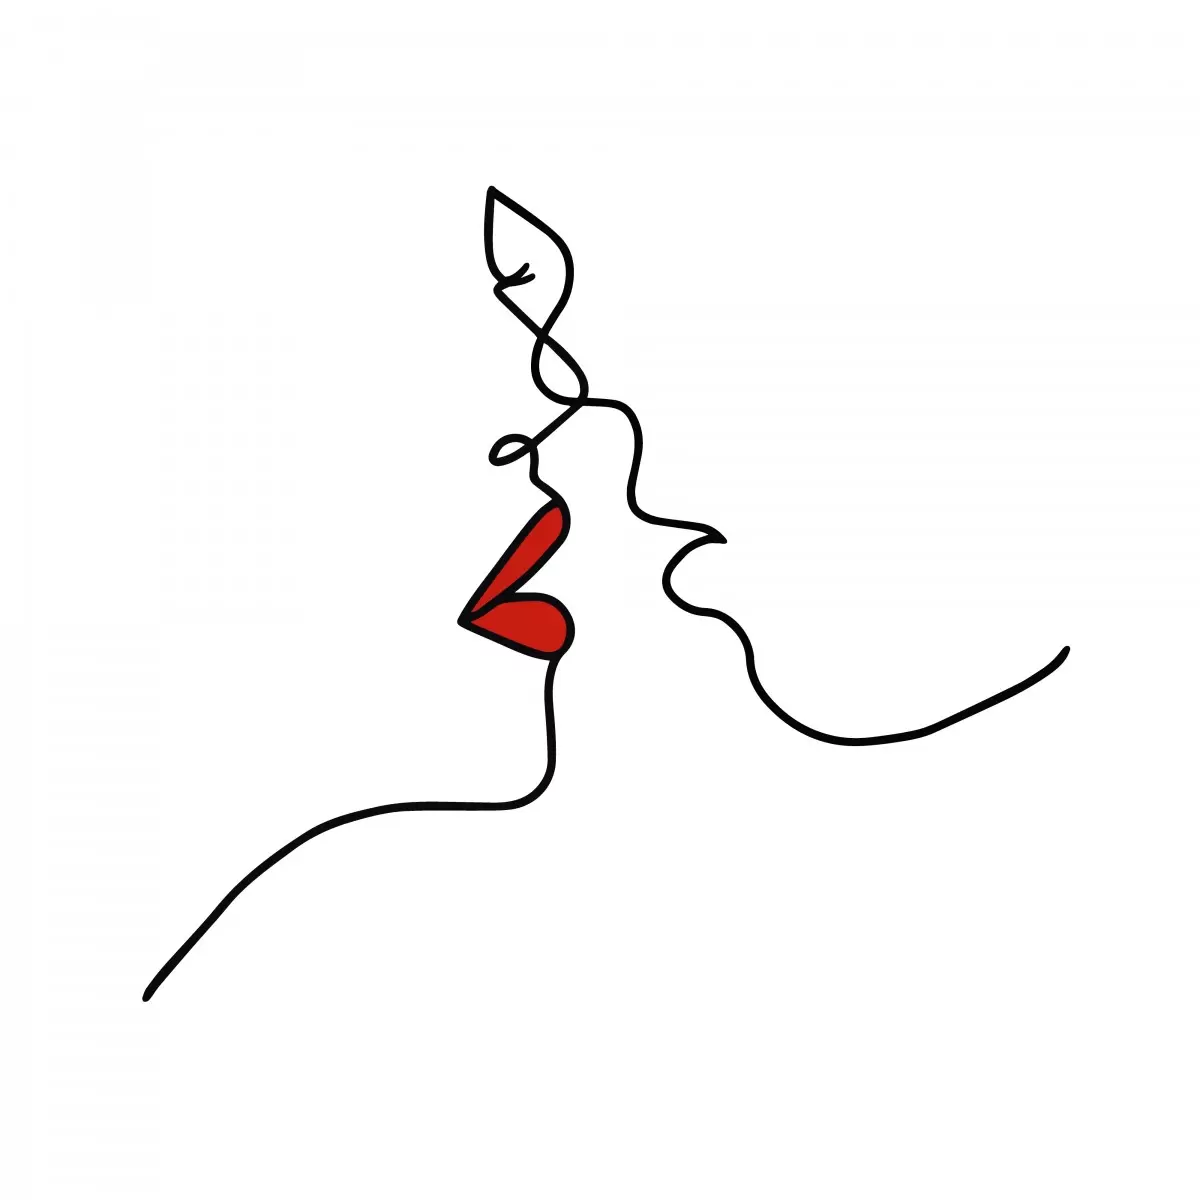 חתום בנשיקה - ציור בקו - Artpicked Modern - סלון בסגנון מינימליסטי ציור בקו אחד  - מק''ט: 376383